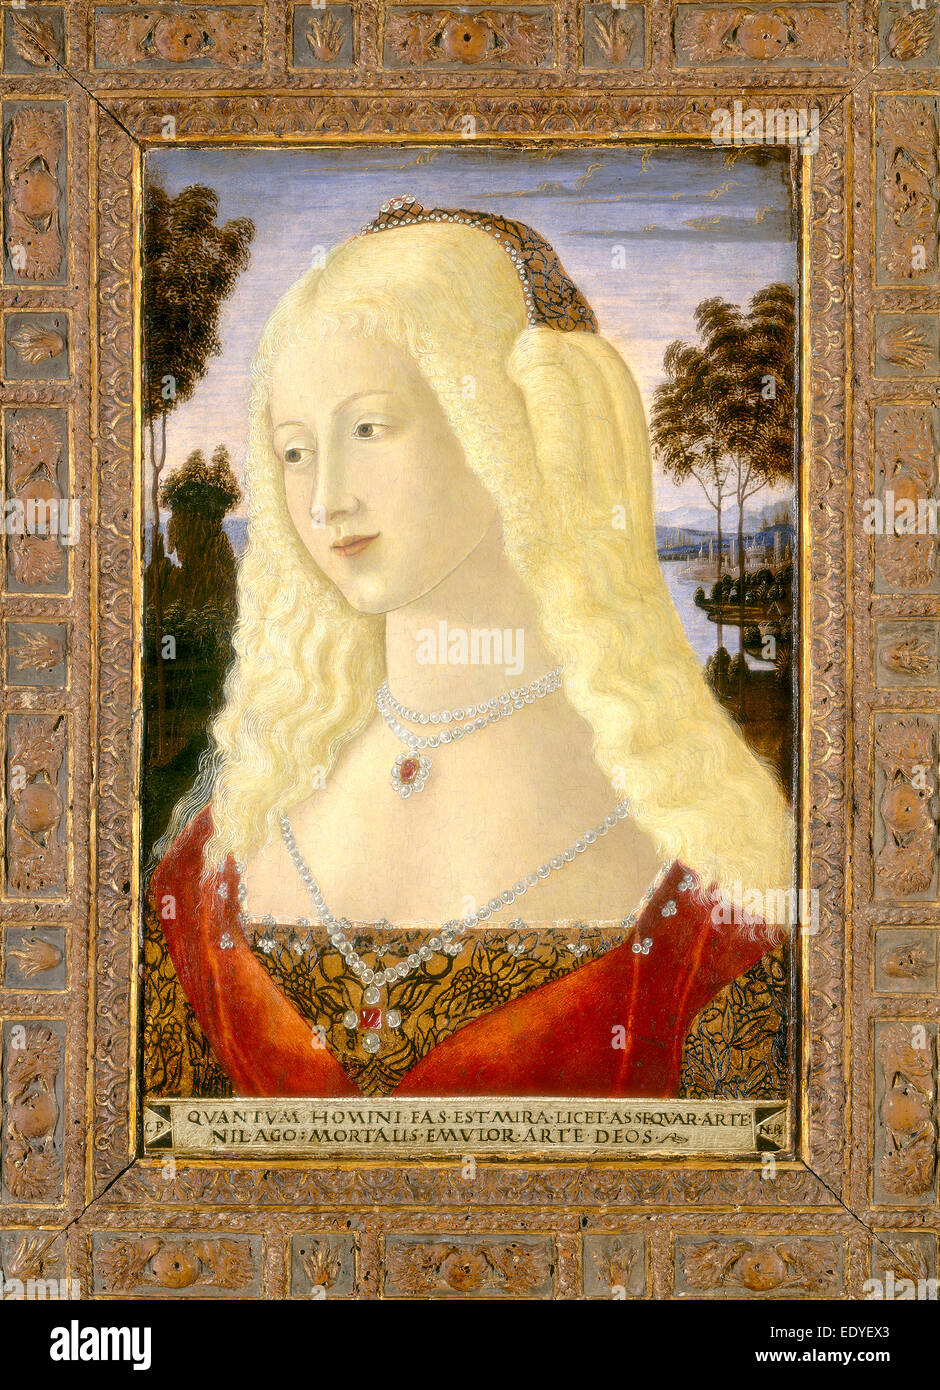 Neroccio de' Landi, Ritratto di una dama, Italiano, 1447 - 1500, c. 1485, tempera su pannello Foto Stock